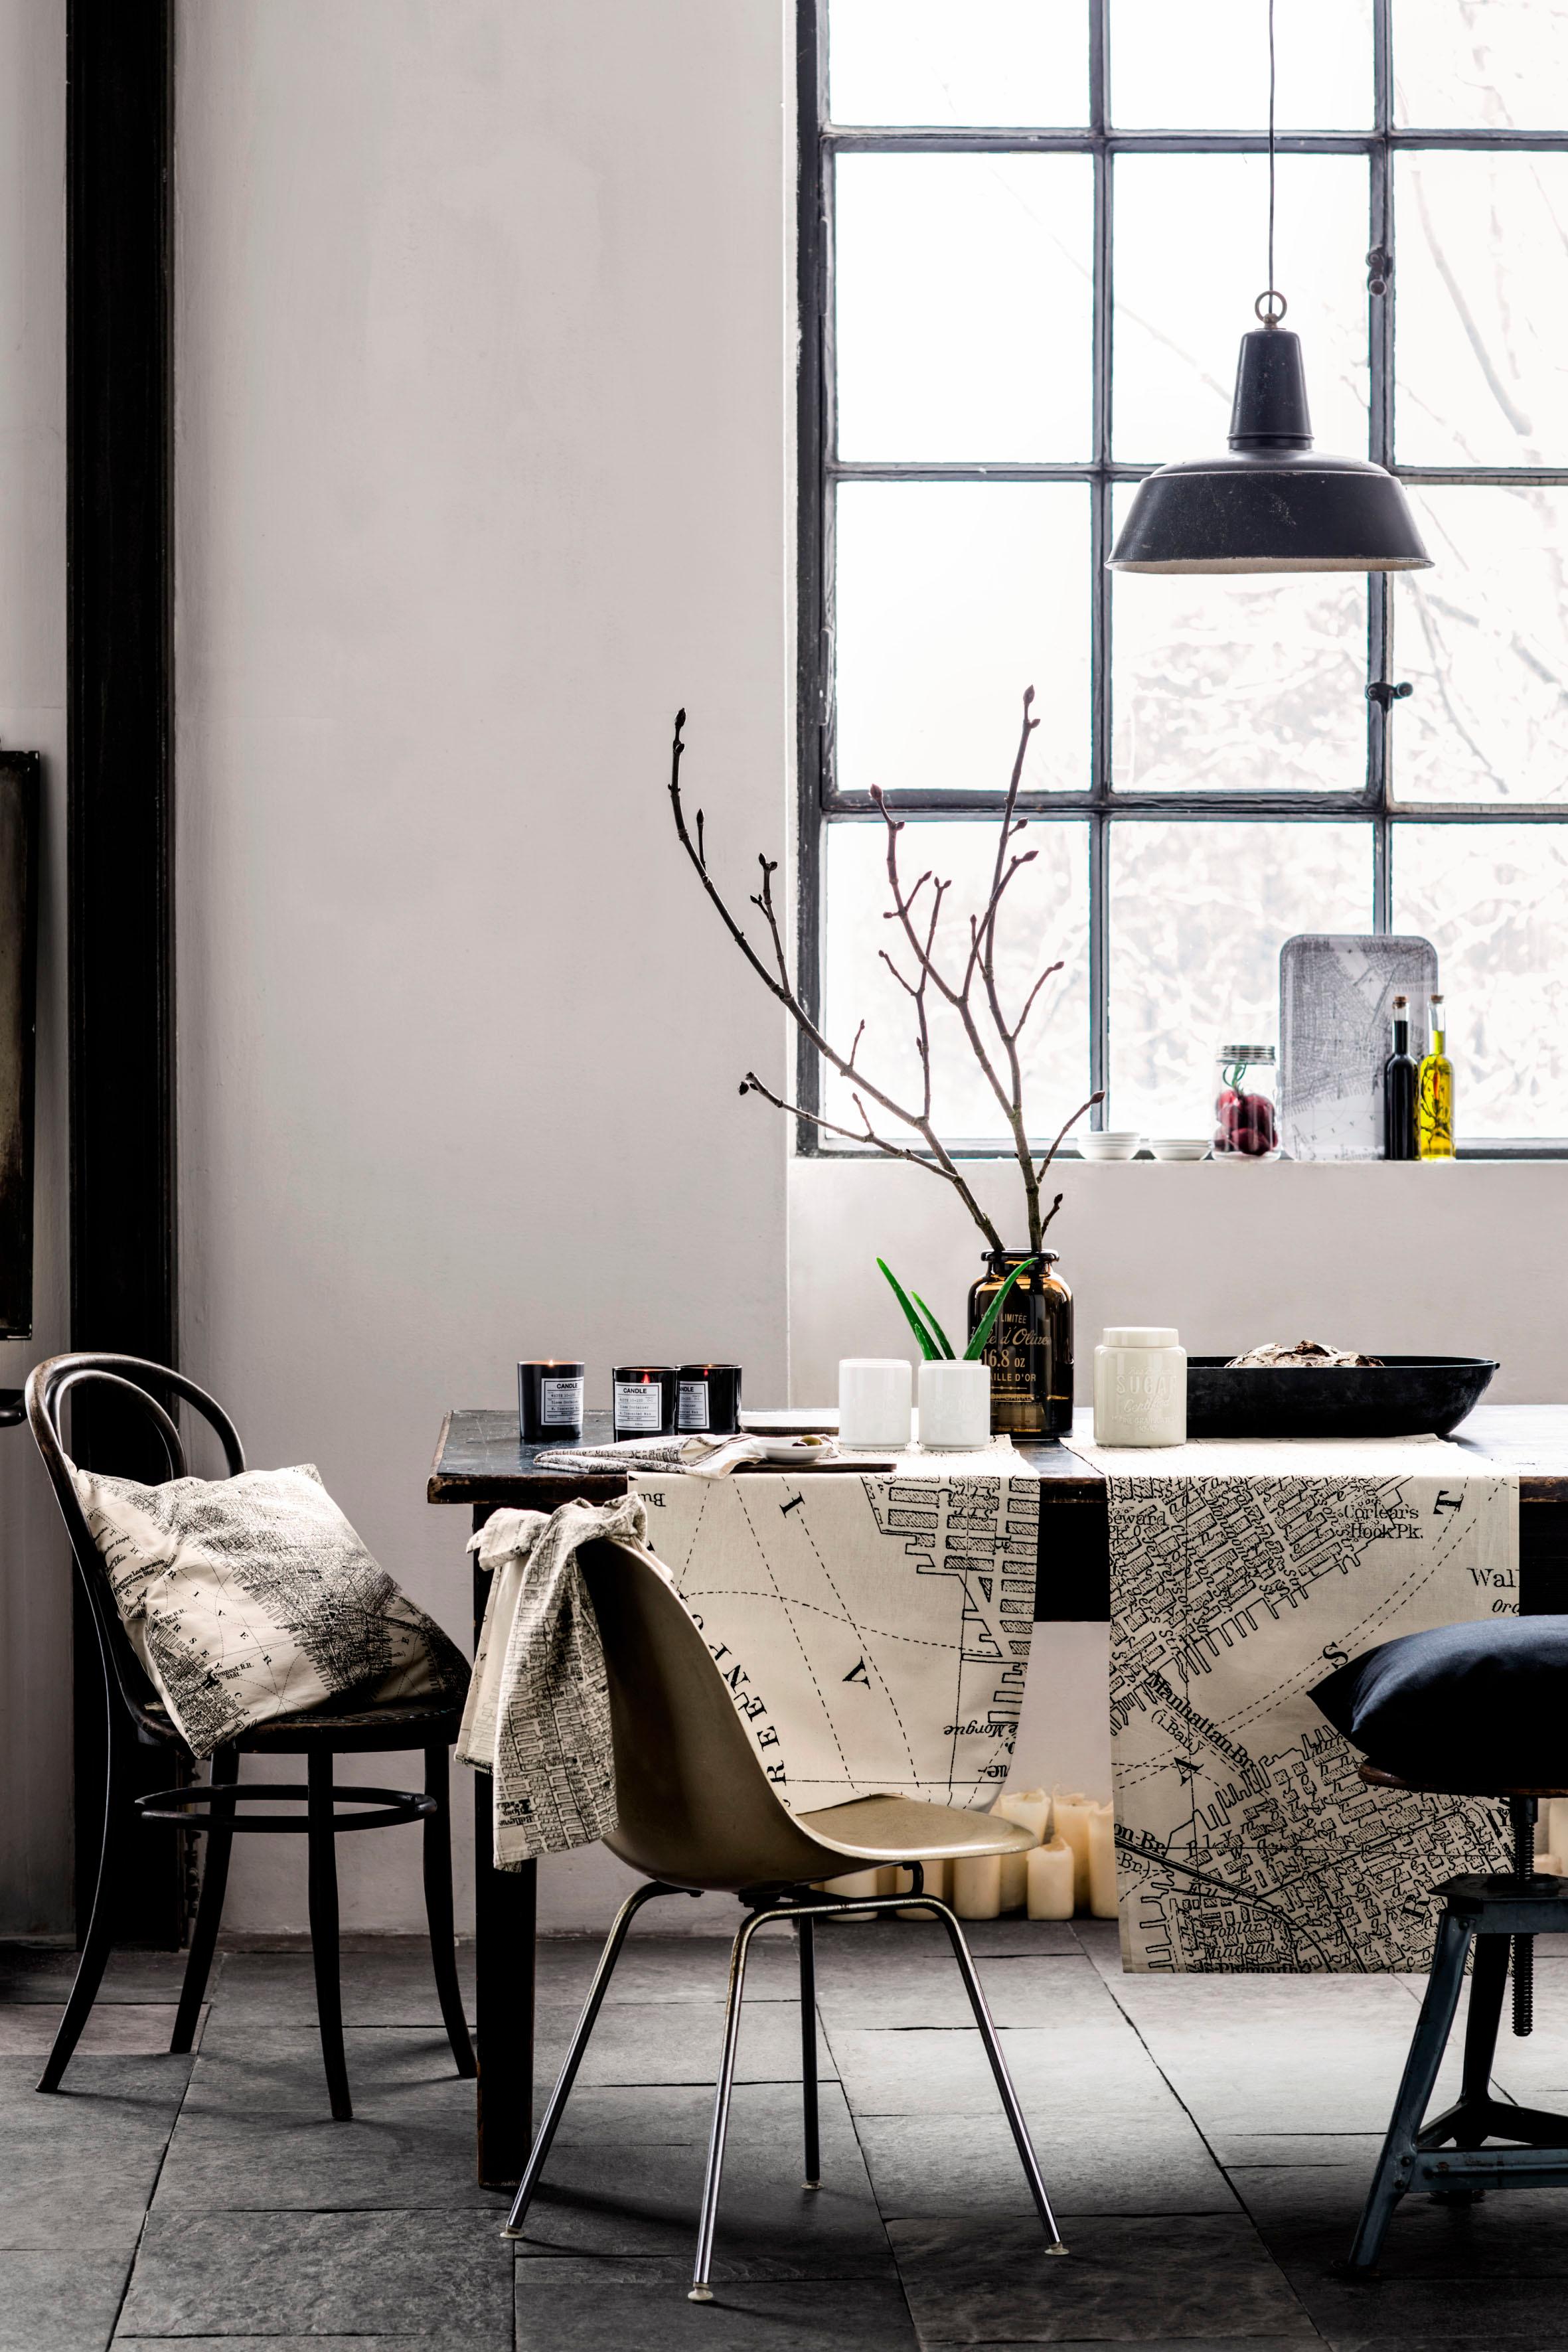 Tischläufer und Vasen als Deko #hocker #steinfliesen #hängeleuchte #industriedesign #esszimmereinrichtung ©H&M Home